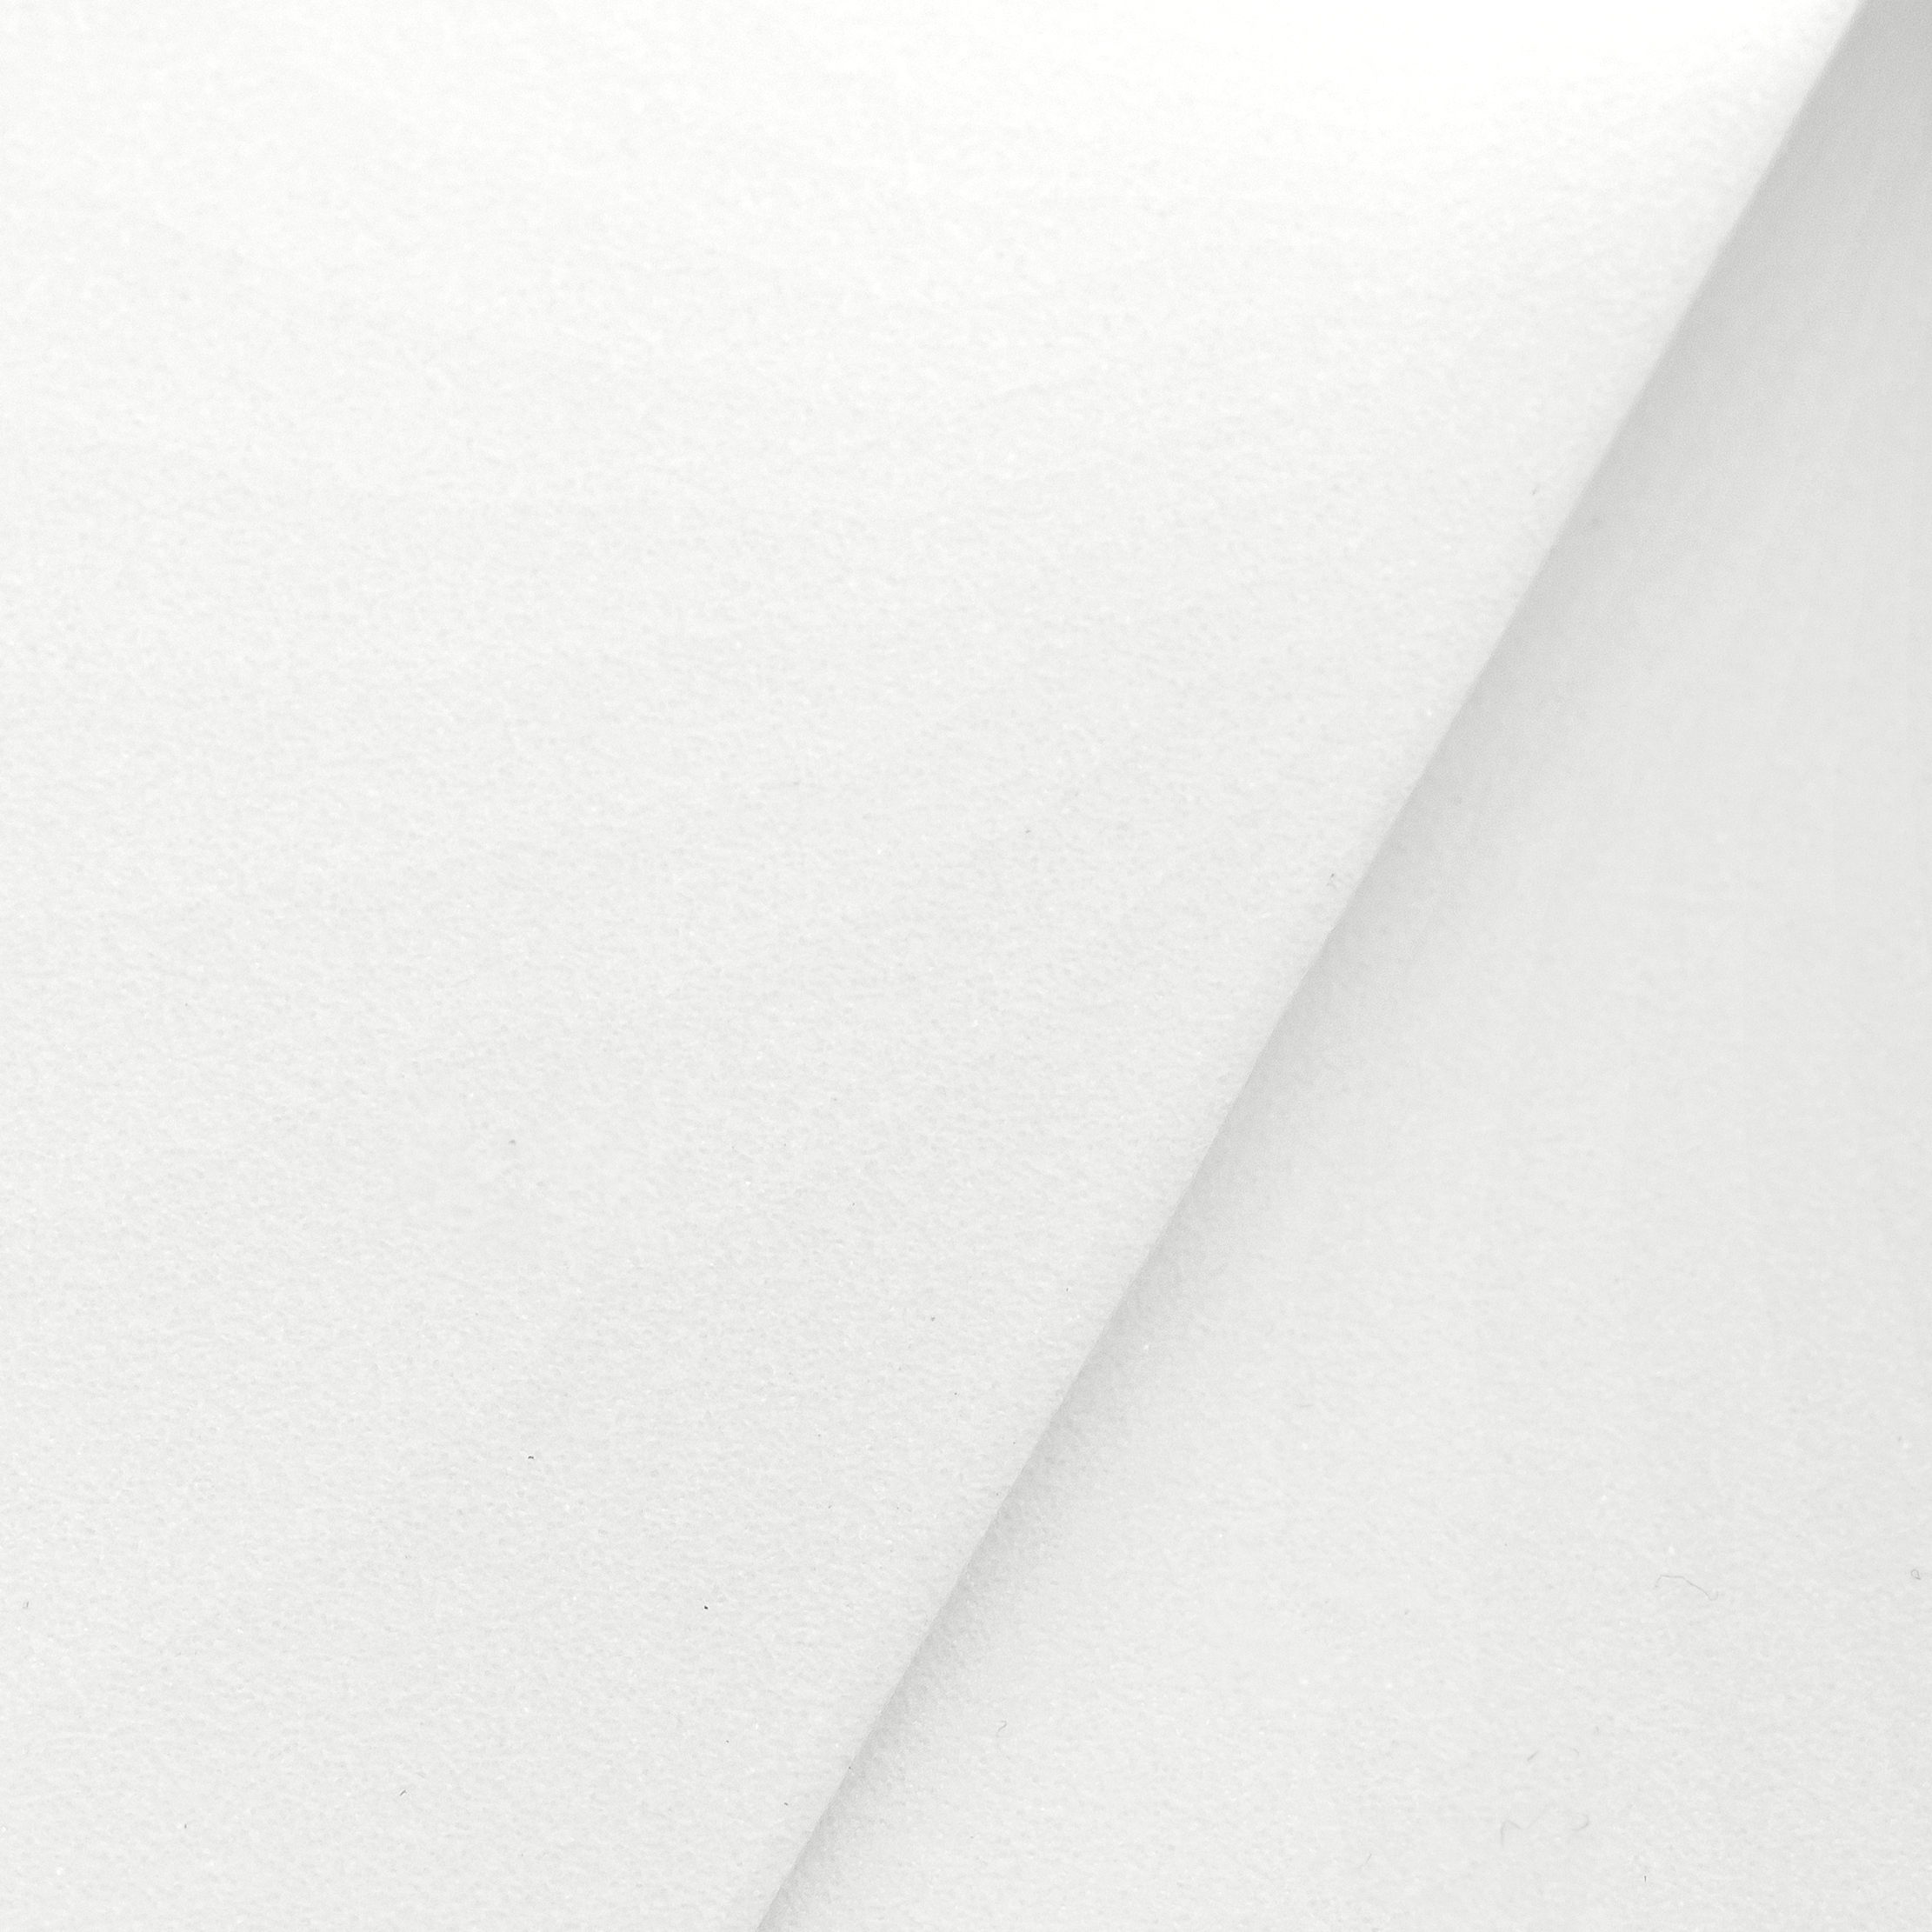 Фоамиран иранский (Фом Эва), арт.001(101), Цвет: Белый, Толщина: 1мм, Размер: 60х70cм, 2 листа (УТ100029497)